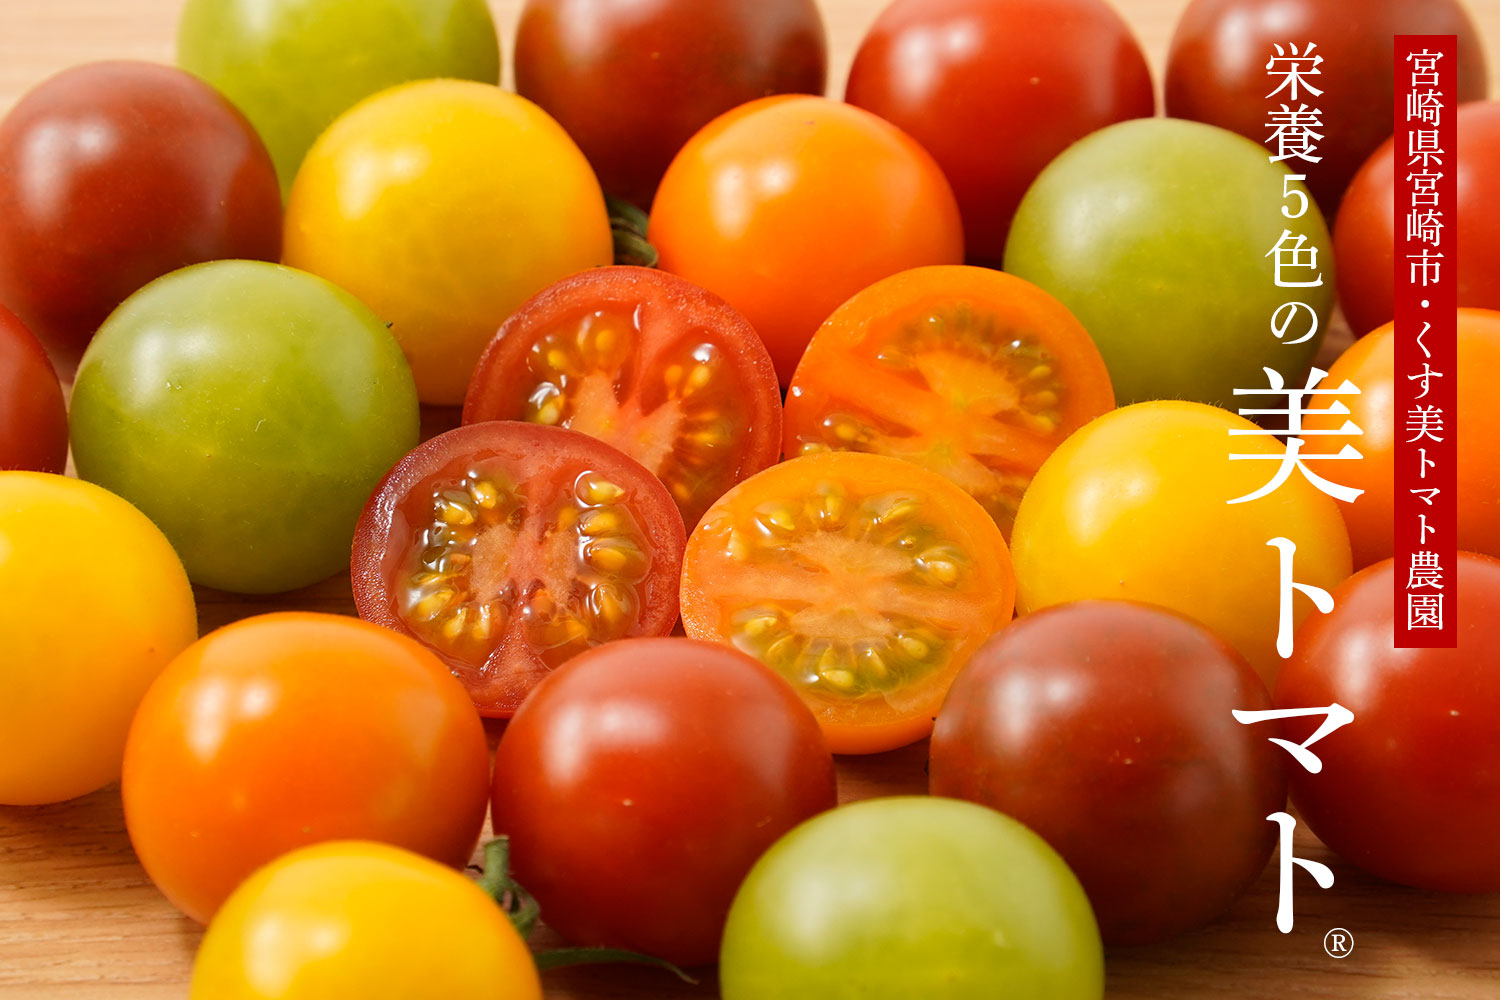 くす美トマト農園 栄養5色の「美トマト®」